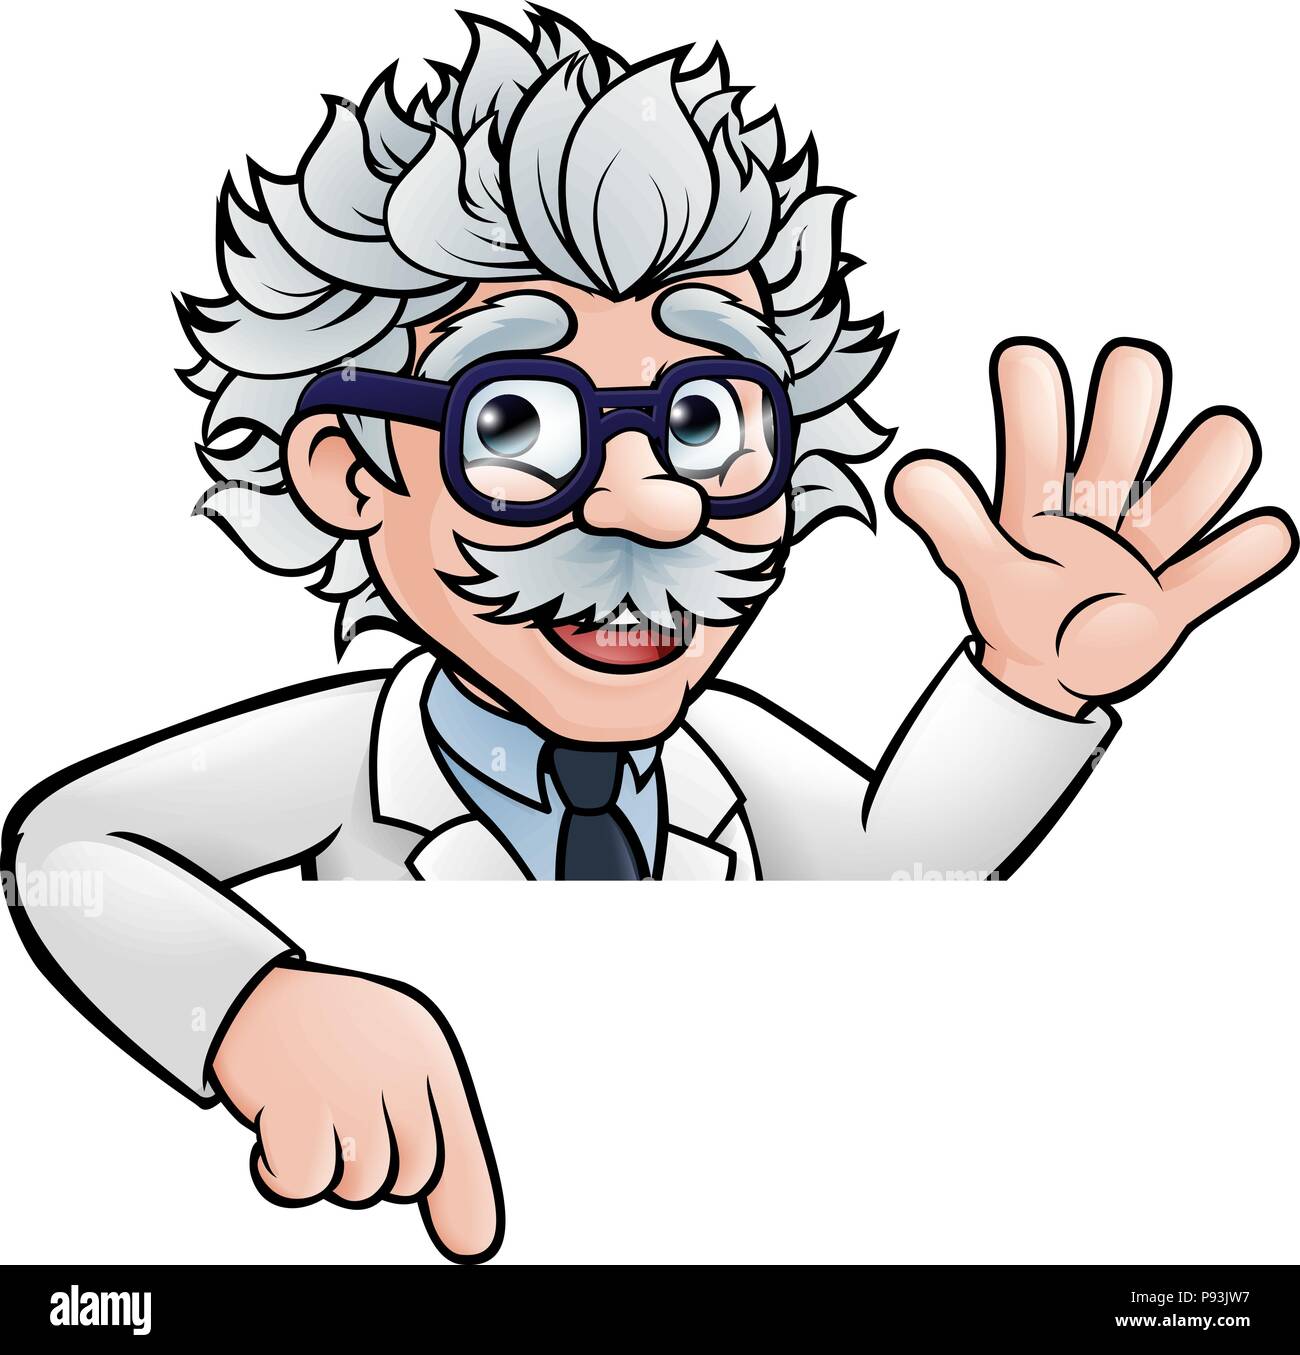 Le professeur chercheur Cartoon Pointing at Sign Illustration de Vecteur